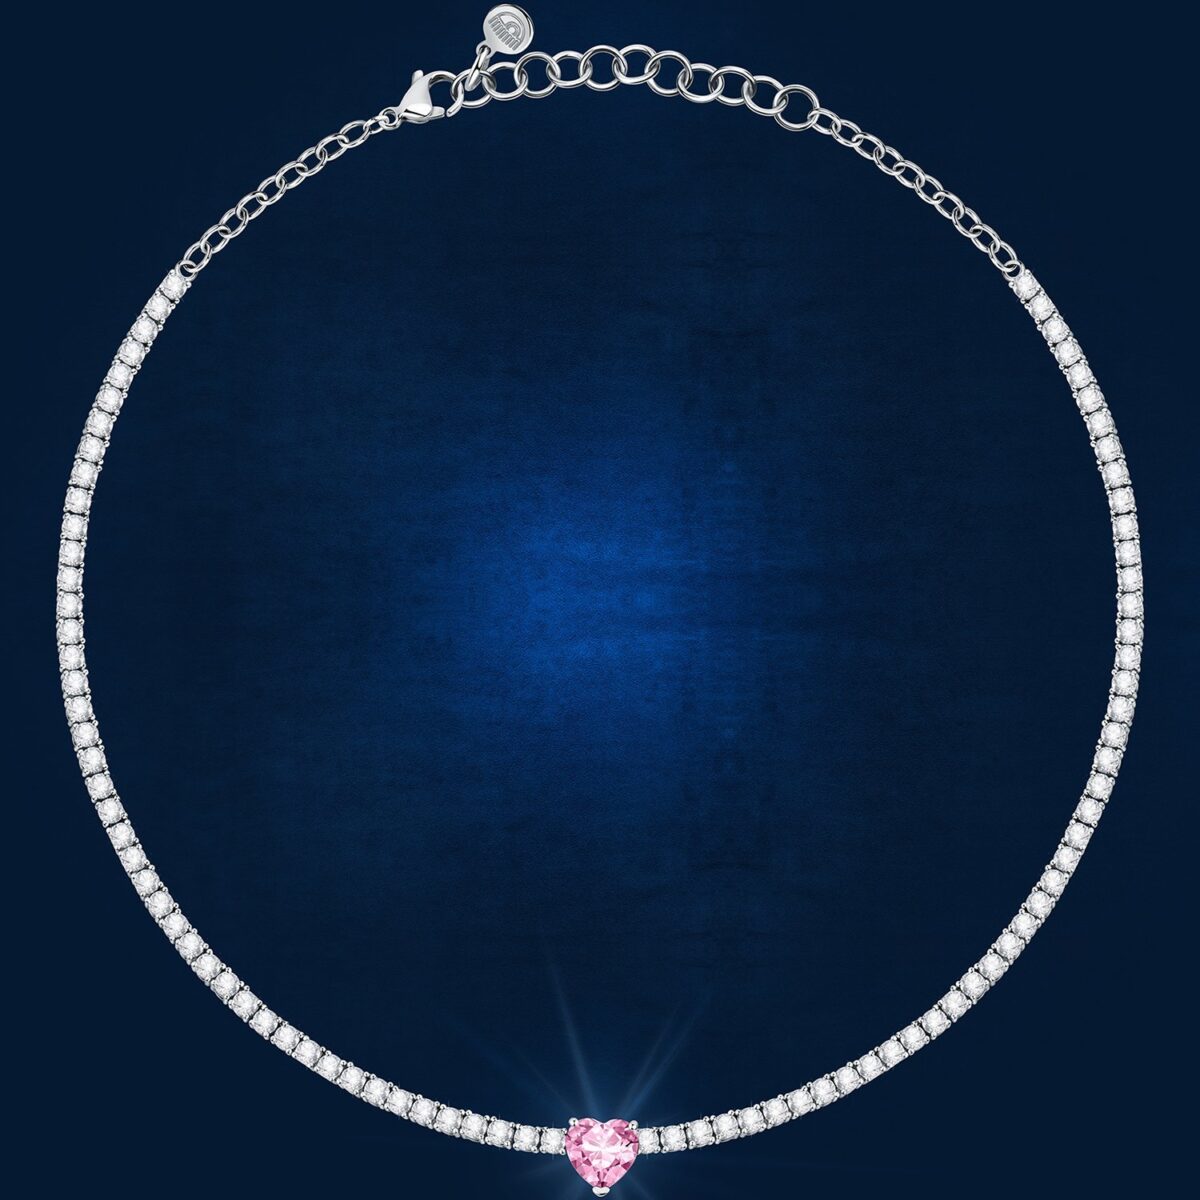 Collana Donna Chiara Ferragni Brand Diamond Heart Cuore Rosa Centrale -  Gioielli Rossetti